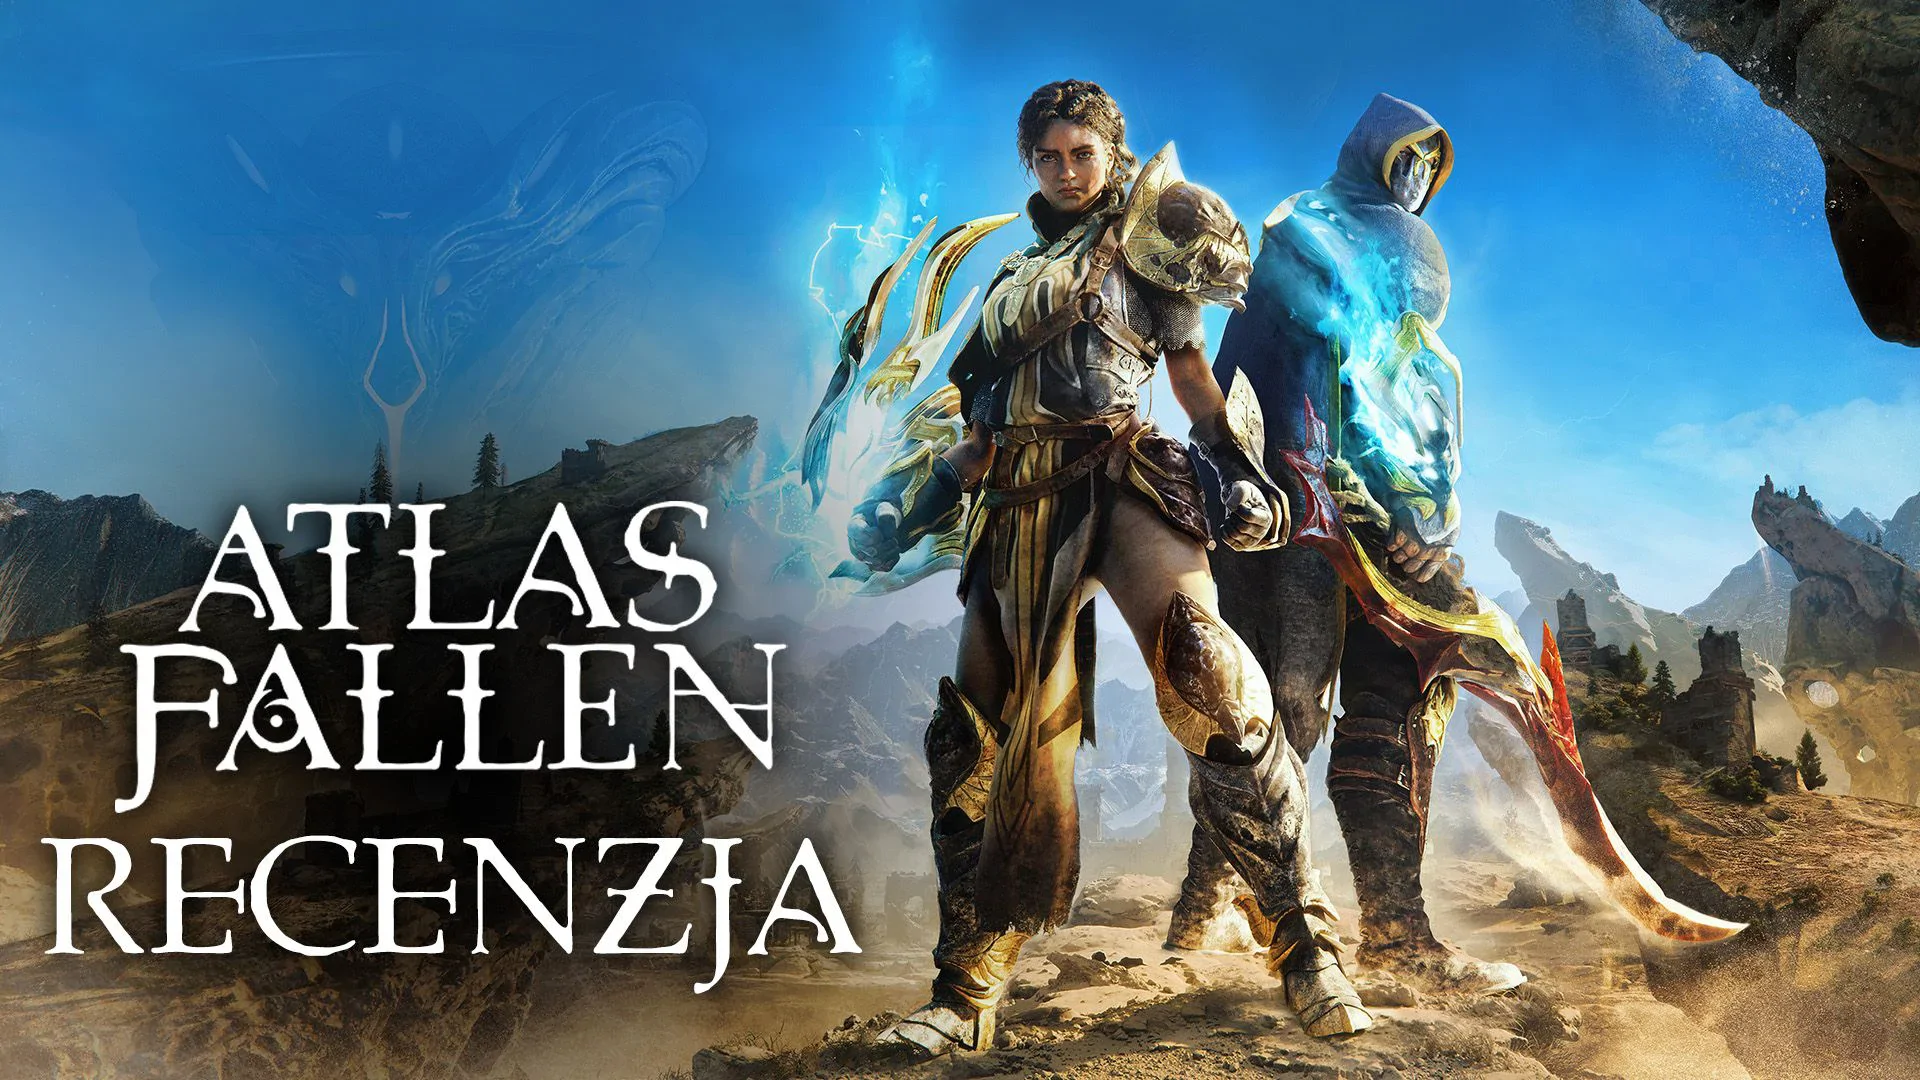 Atlas Fallen - recenzja gry. Nowy Gothic?